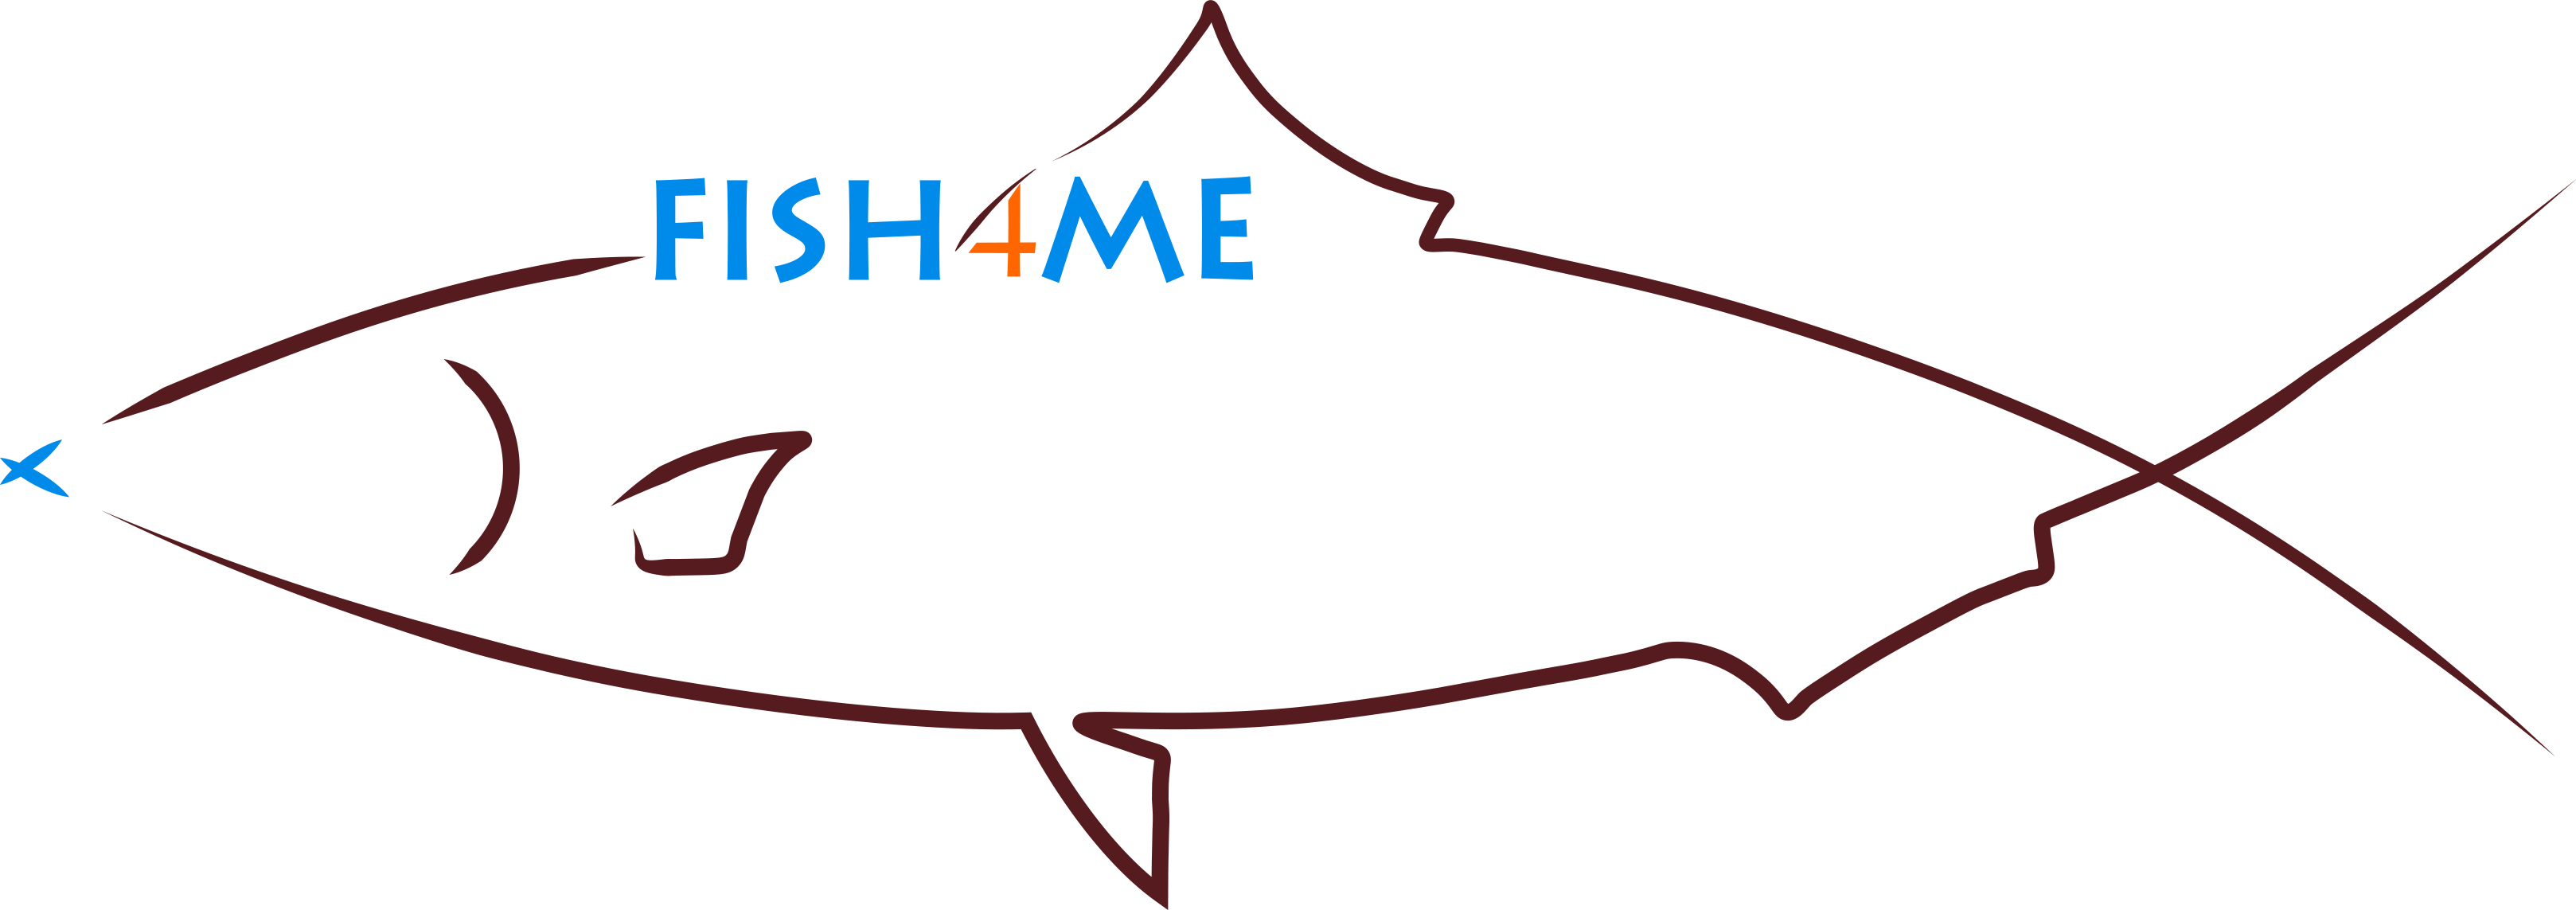 FISH4ME